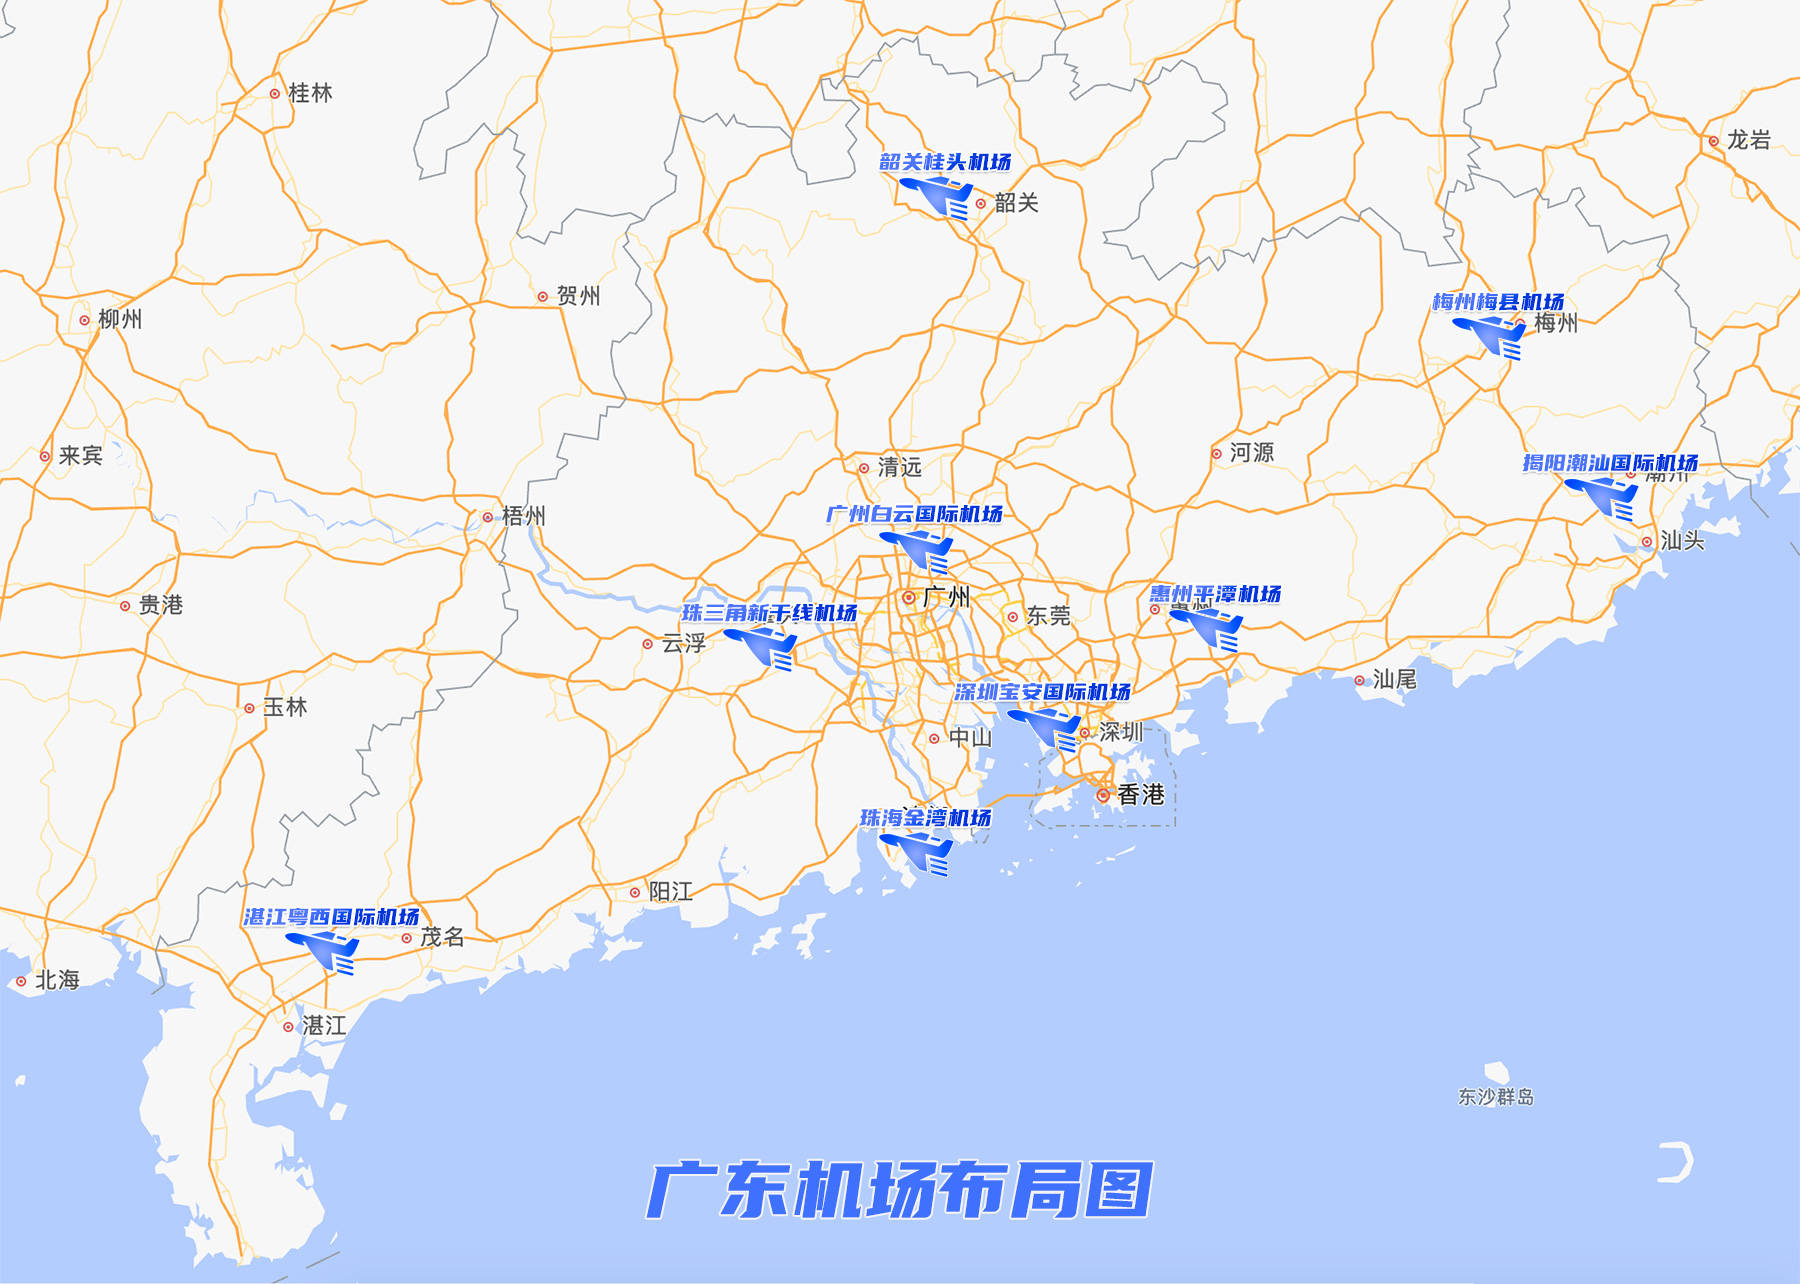 广东机场布局图1,广州白云国际机场(扩建三期)广州白云国际机场广州